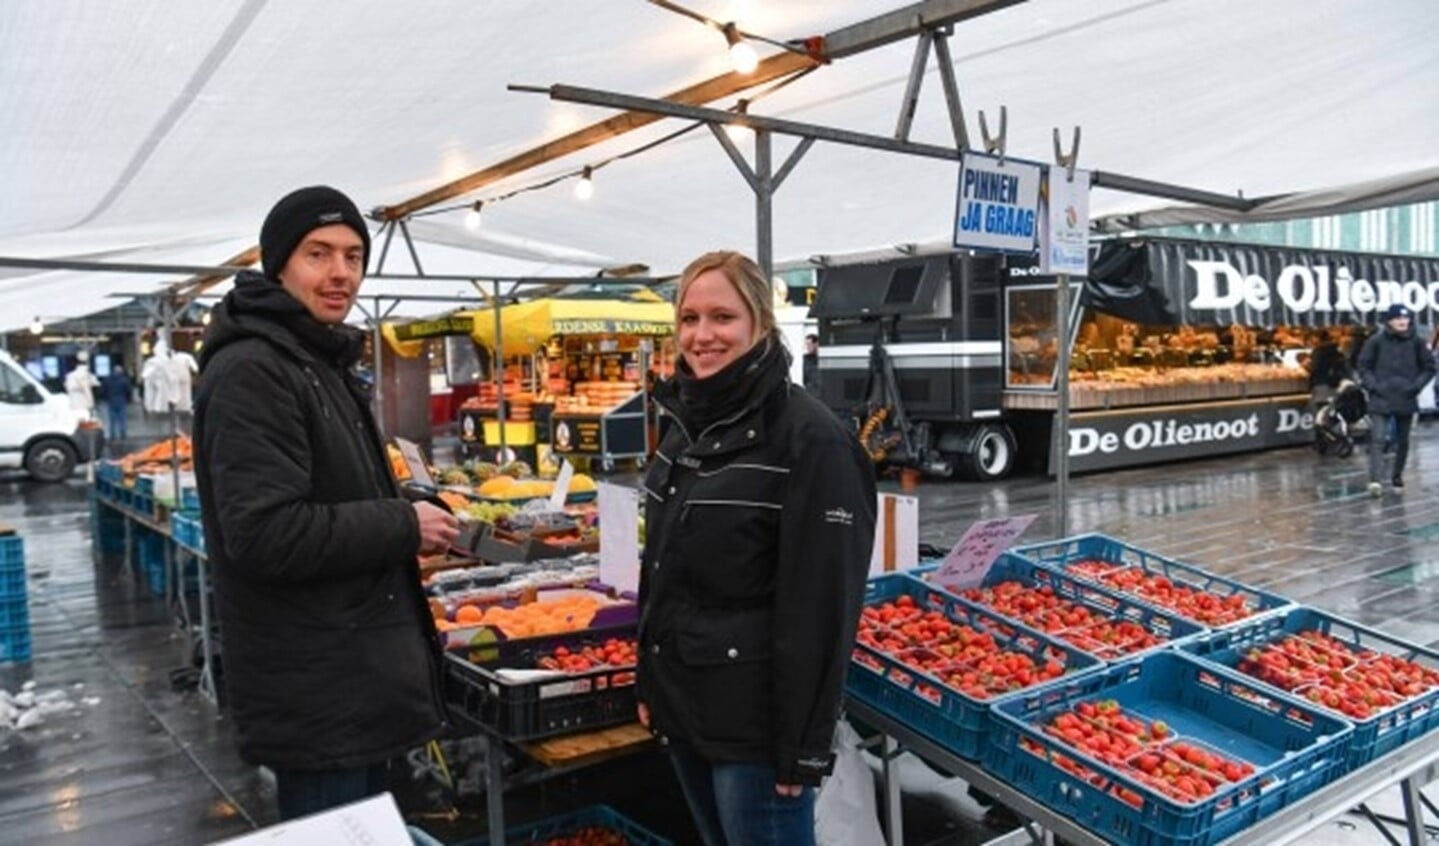 Marktmeester Anne-Marie Boeren in gesprek met een koopman op de dinsdagmarkt in het centrum van Eindhoven. Foto: Bert Jansen